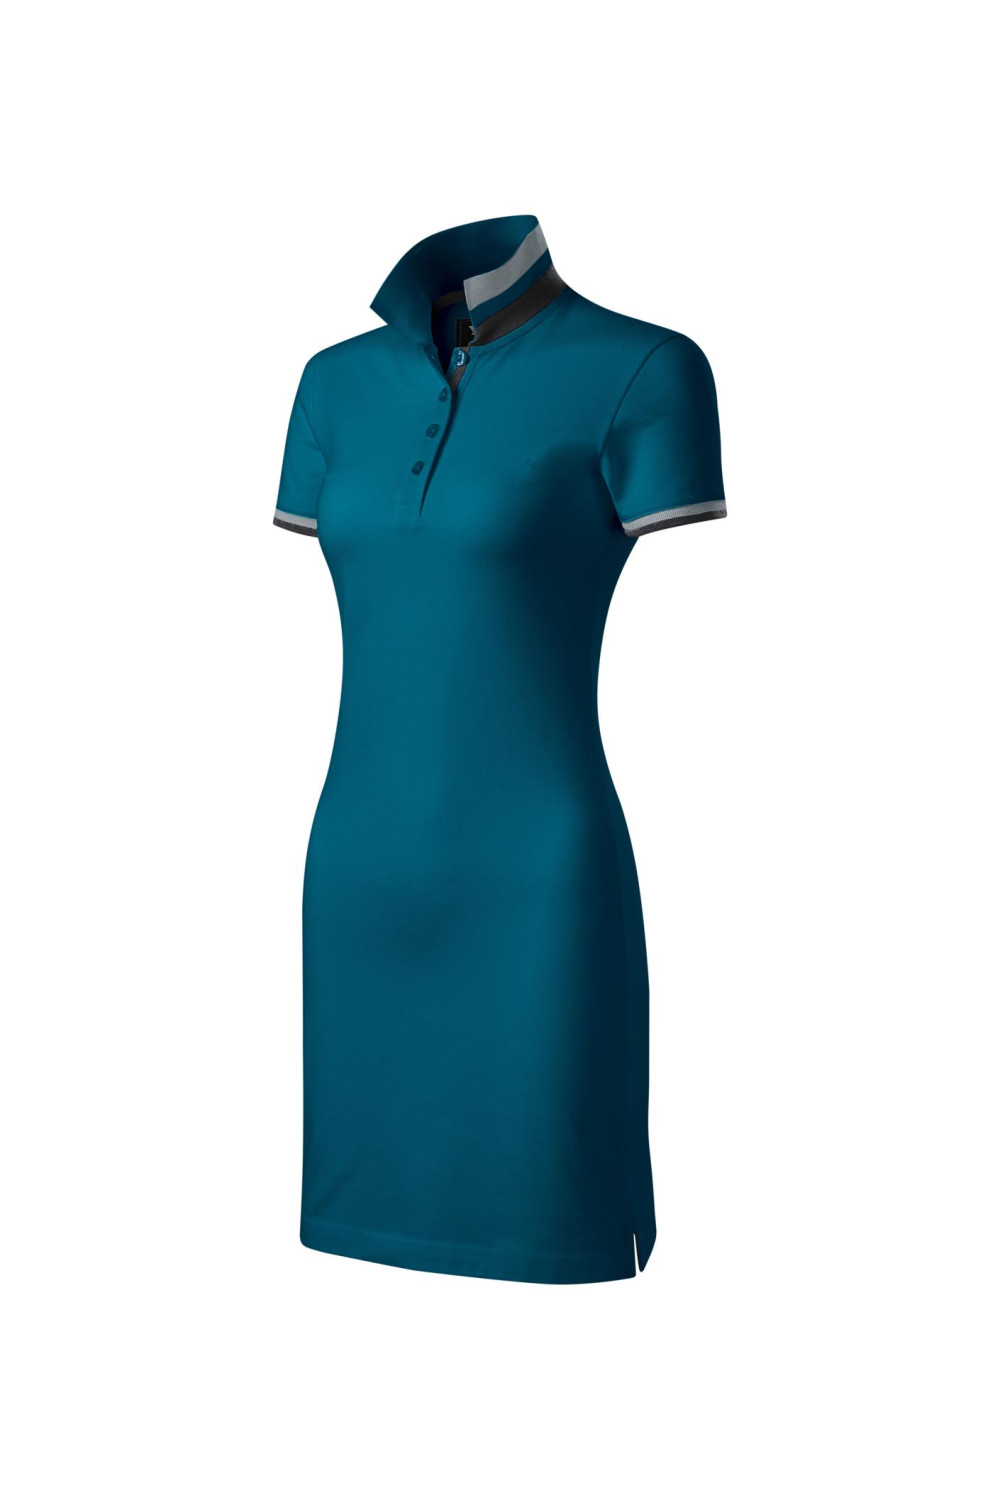 DRESS UP 271 MALFINI Sukienka damska z kołnierzykiem sportowa bawełna 100% petrol blue